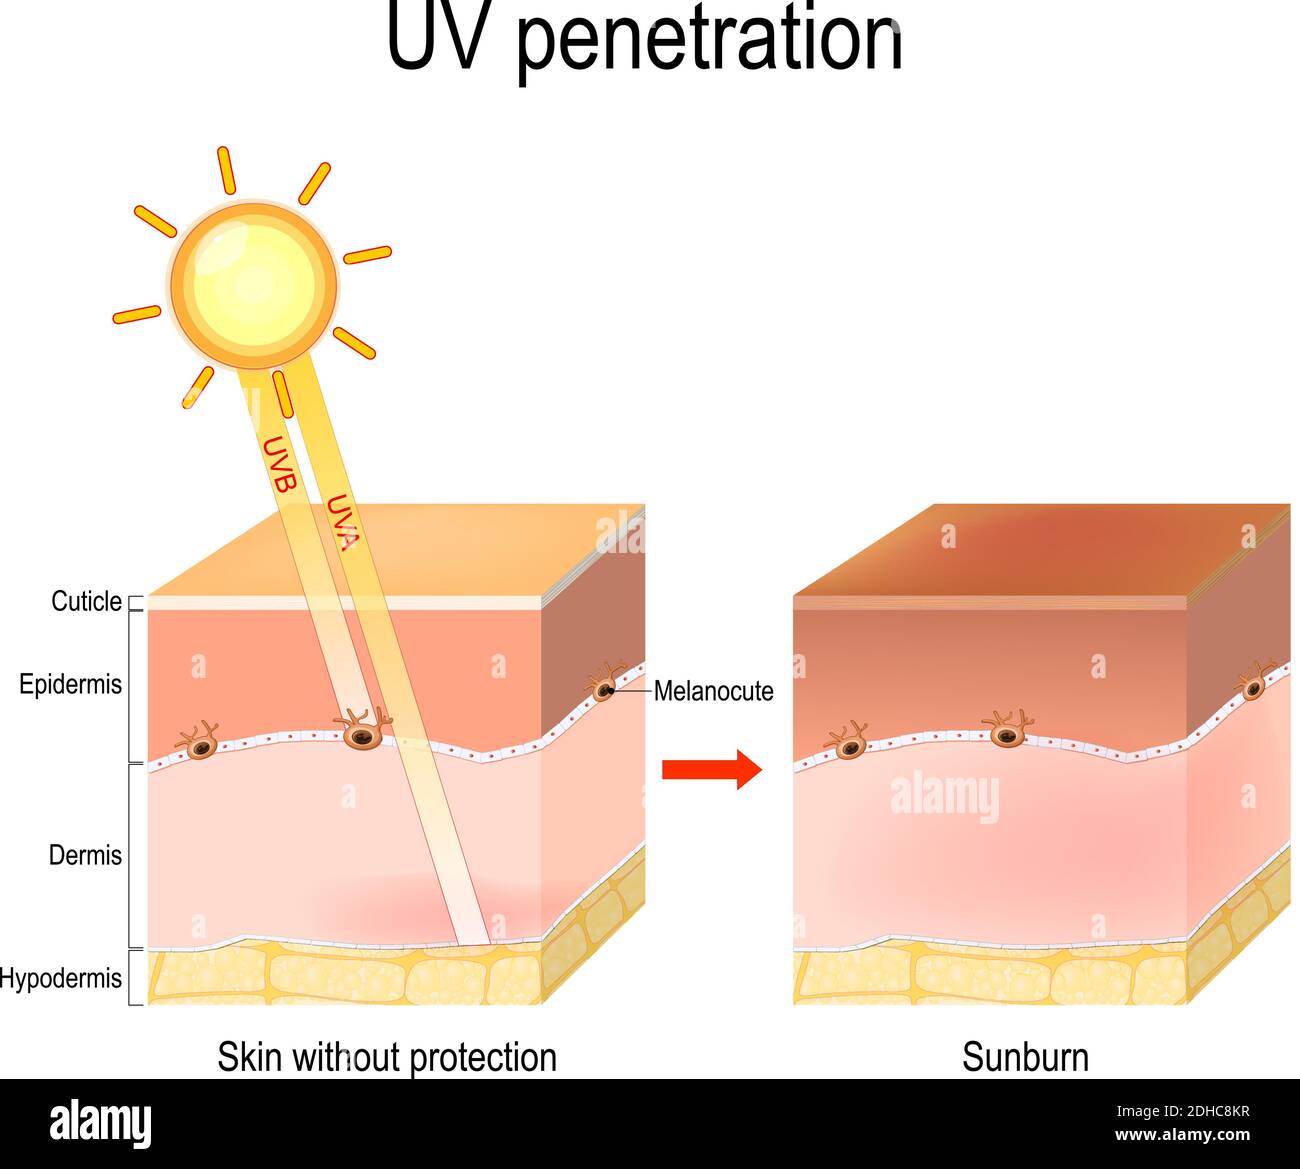 pénétration uv dans les couches de la peau humaine. Les rayons UVB ne pénètrent pas profondément la peau car ils sont bloqués par l'épiderme. Pénétration UVA Illustration de Vecteur